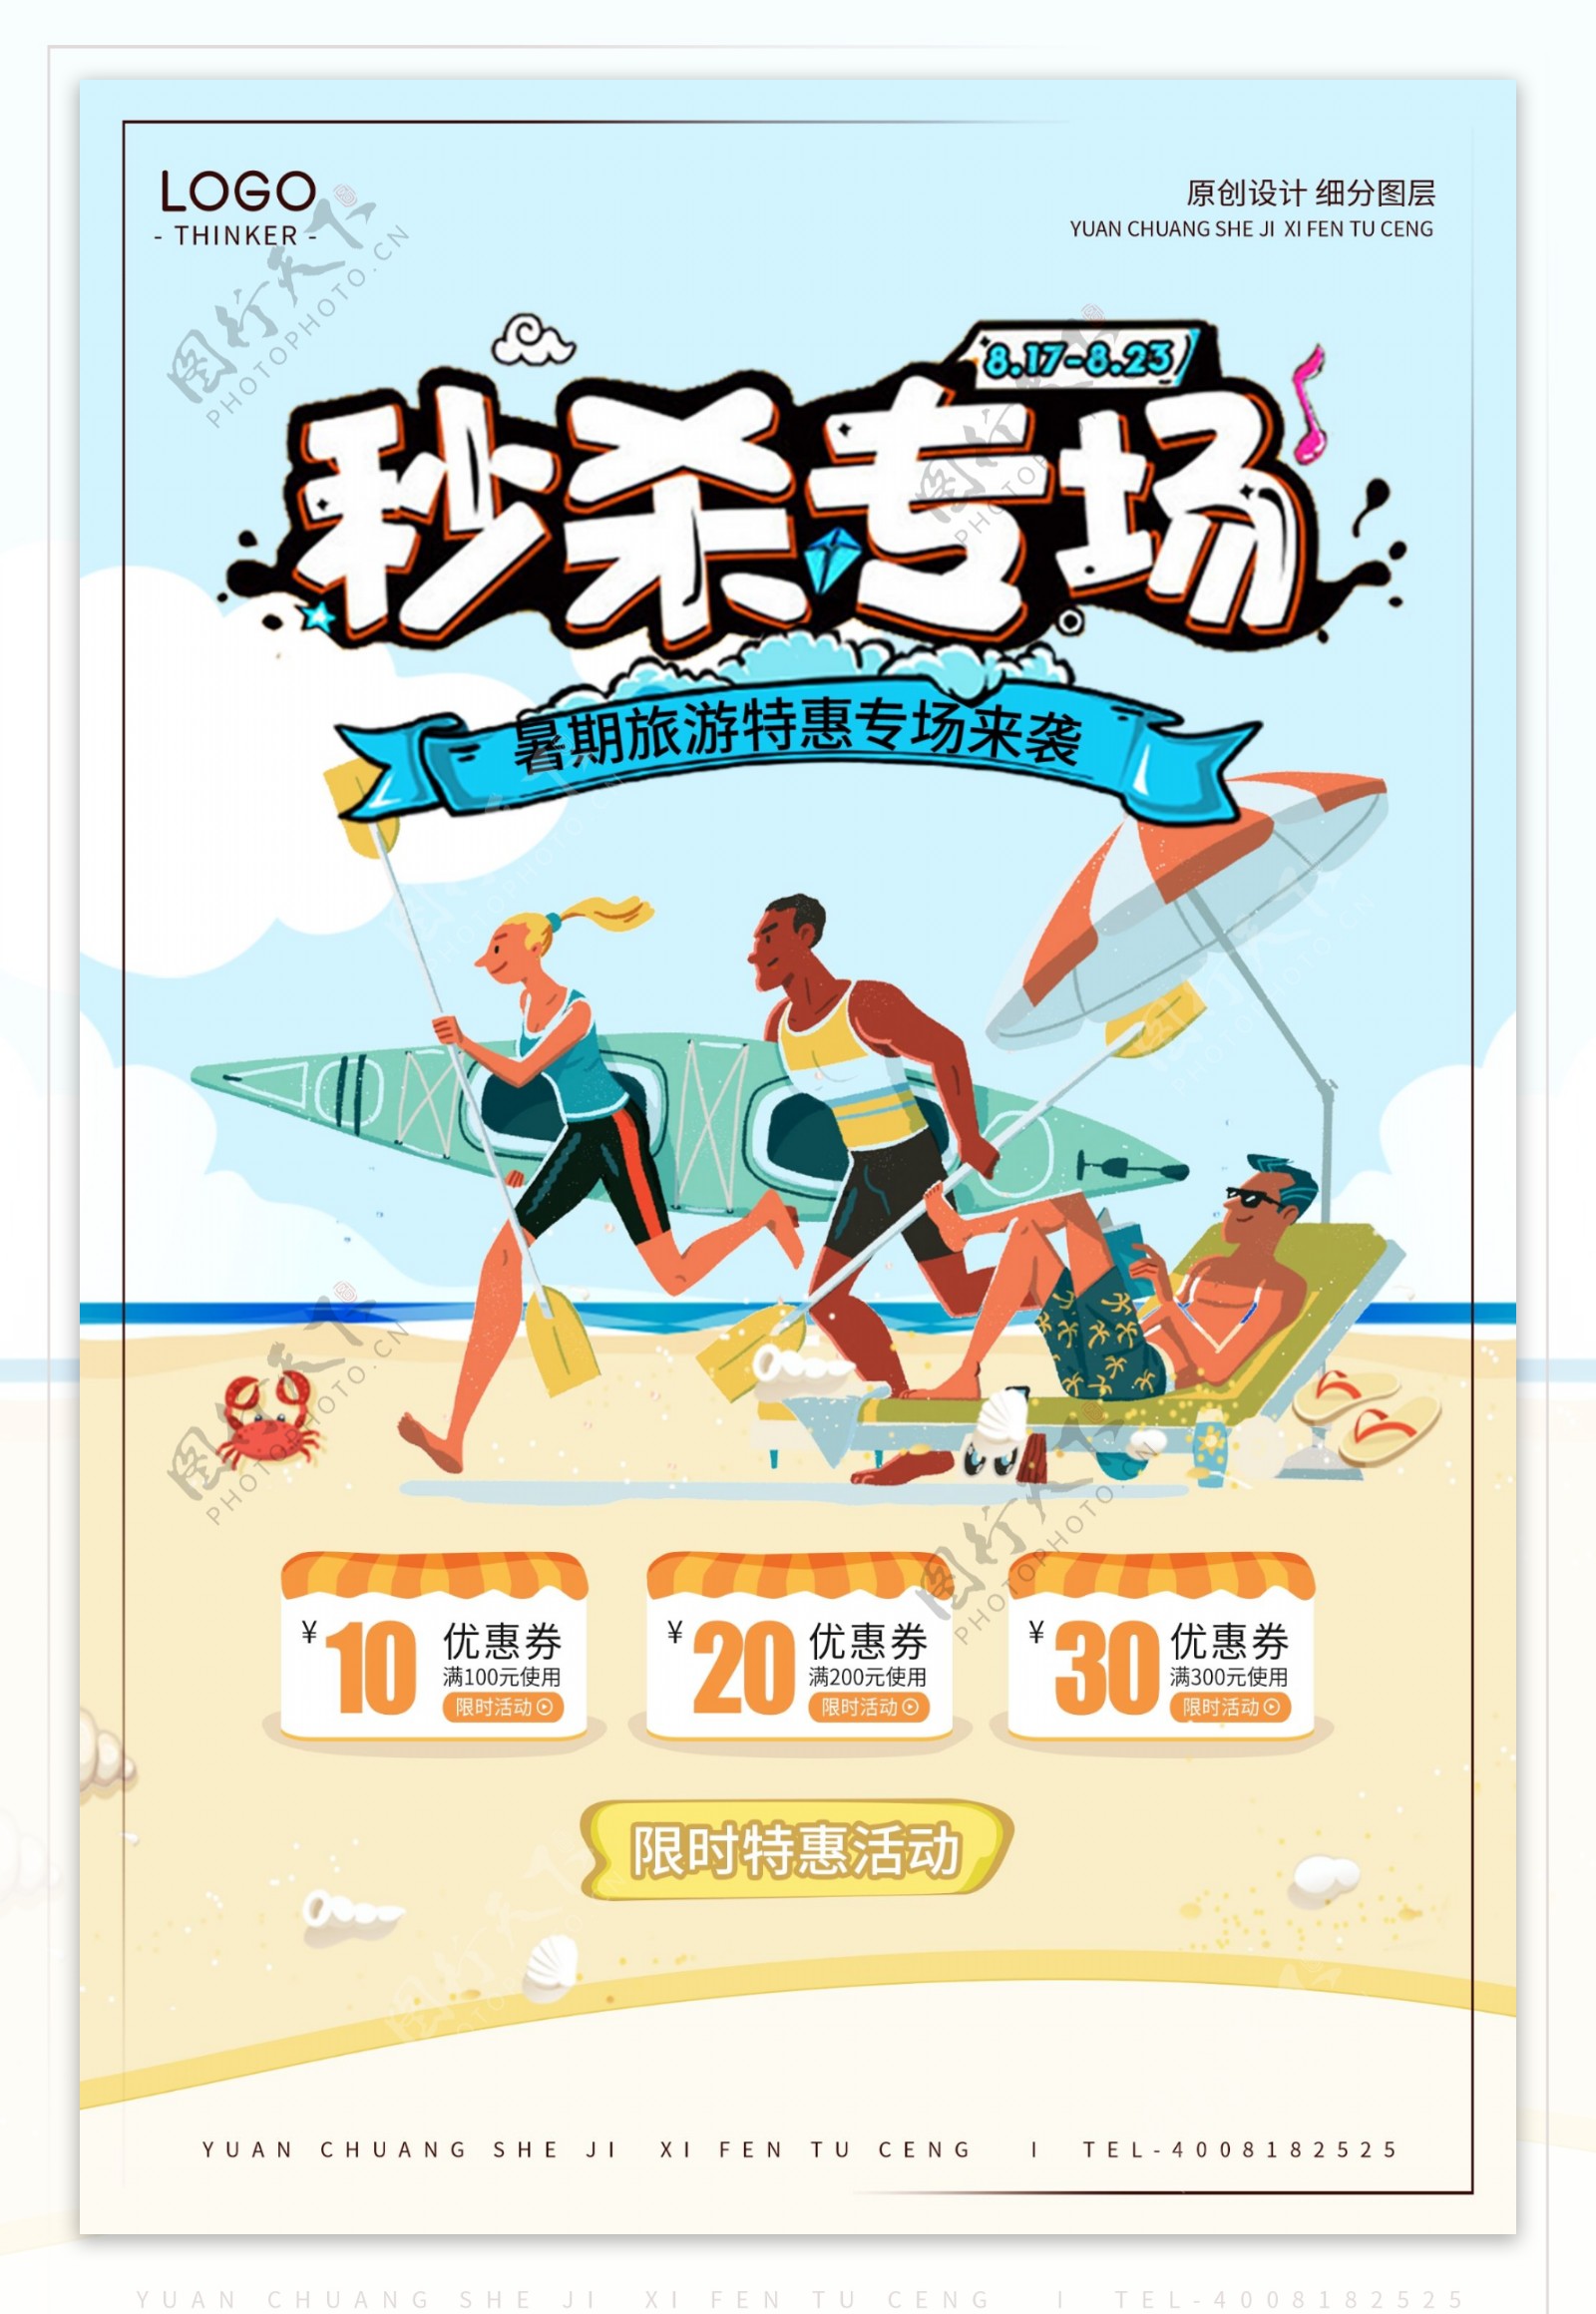 创意卡通夏季旅游产品秒杀宣传海报设计